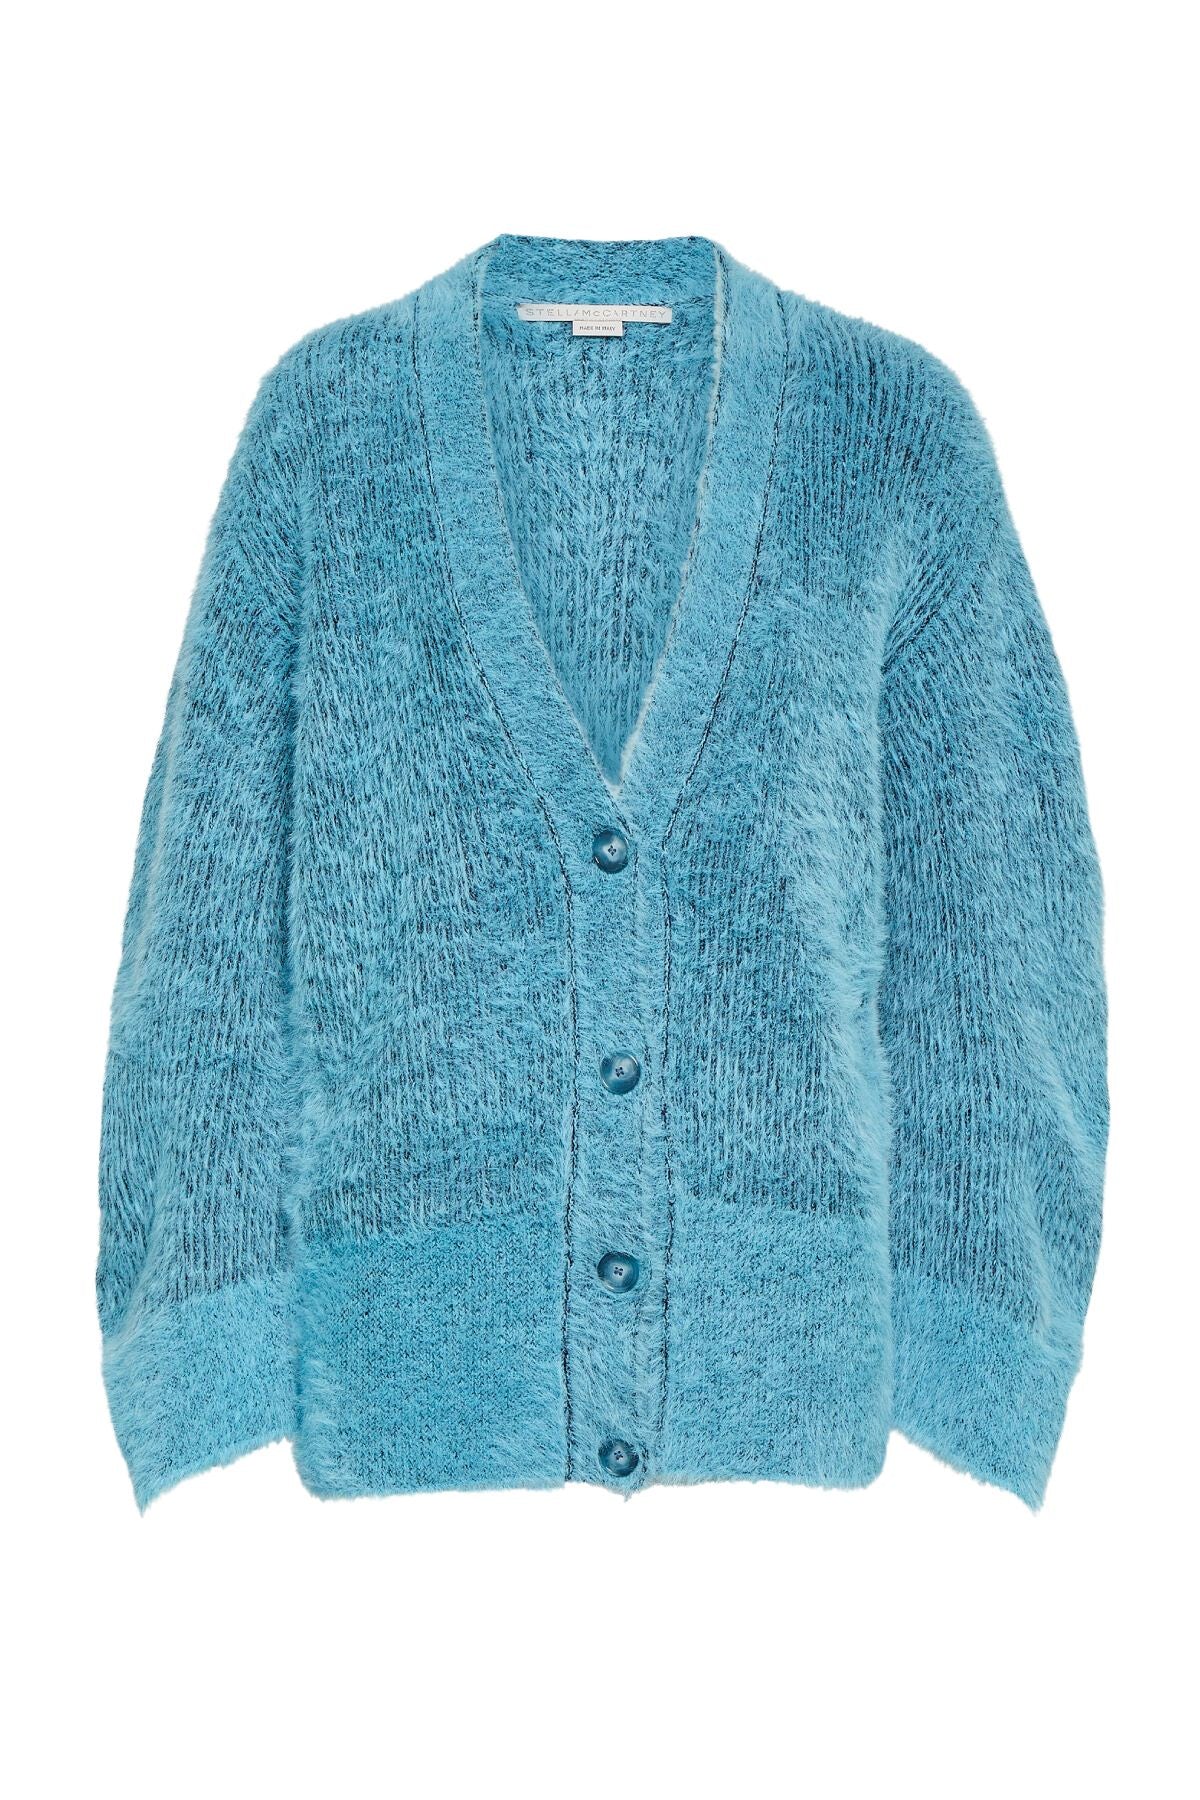 Stella McCartney Fluffy Knit Cardigan - Bright Blue